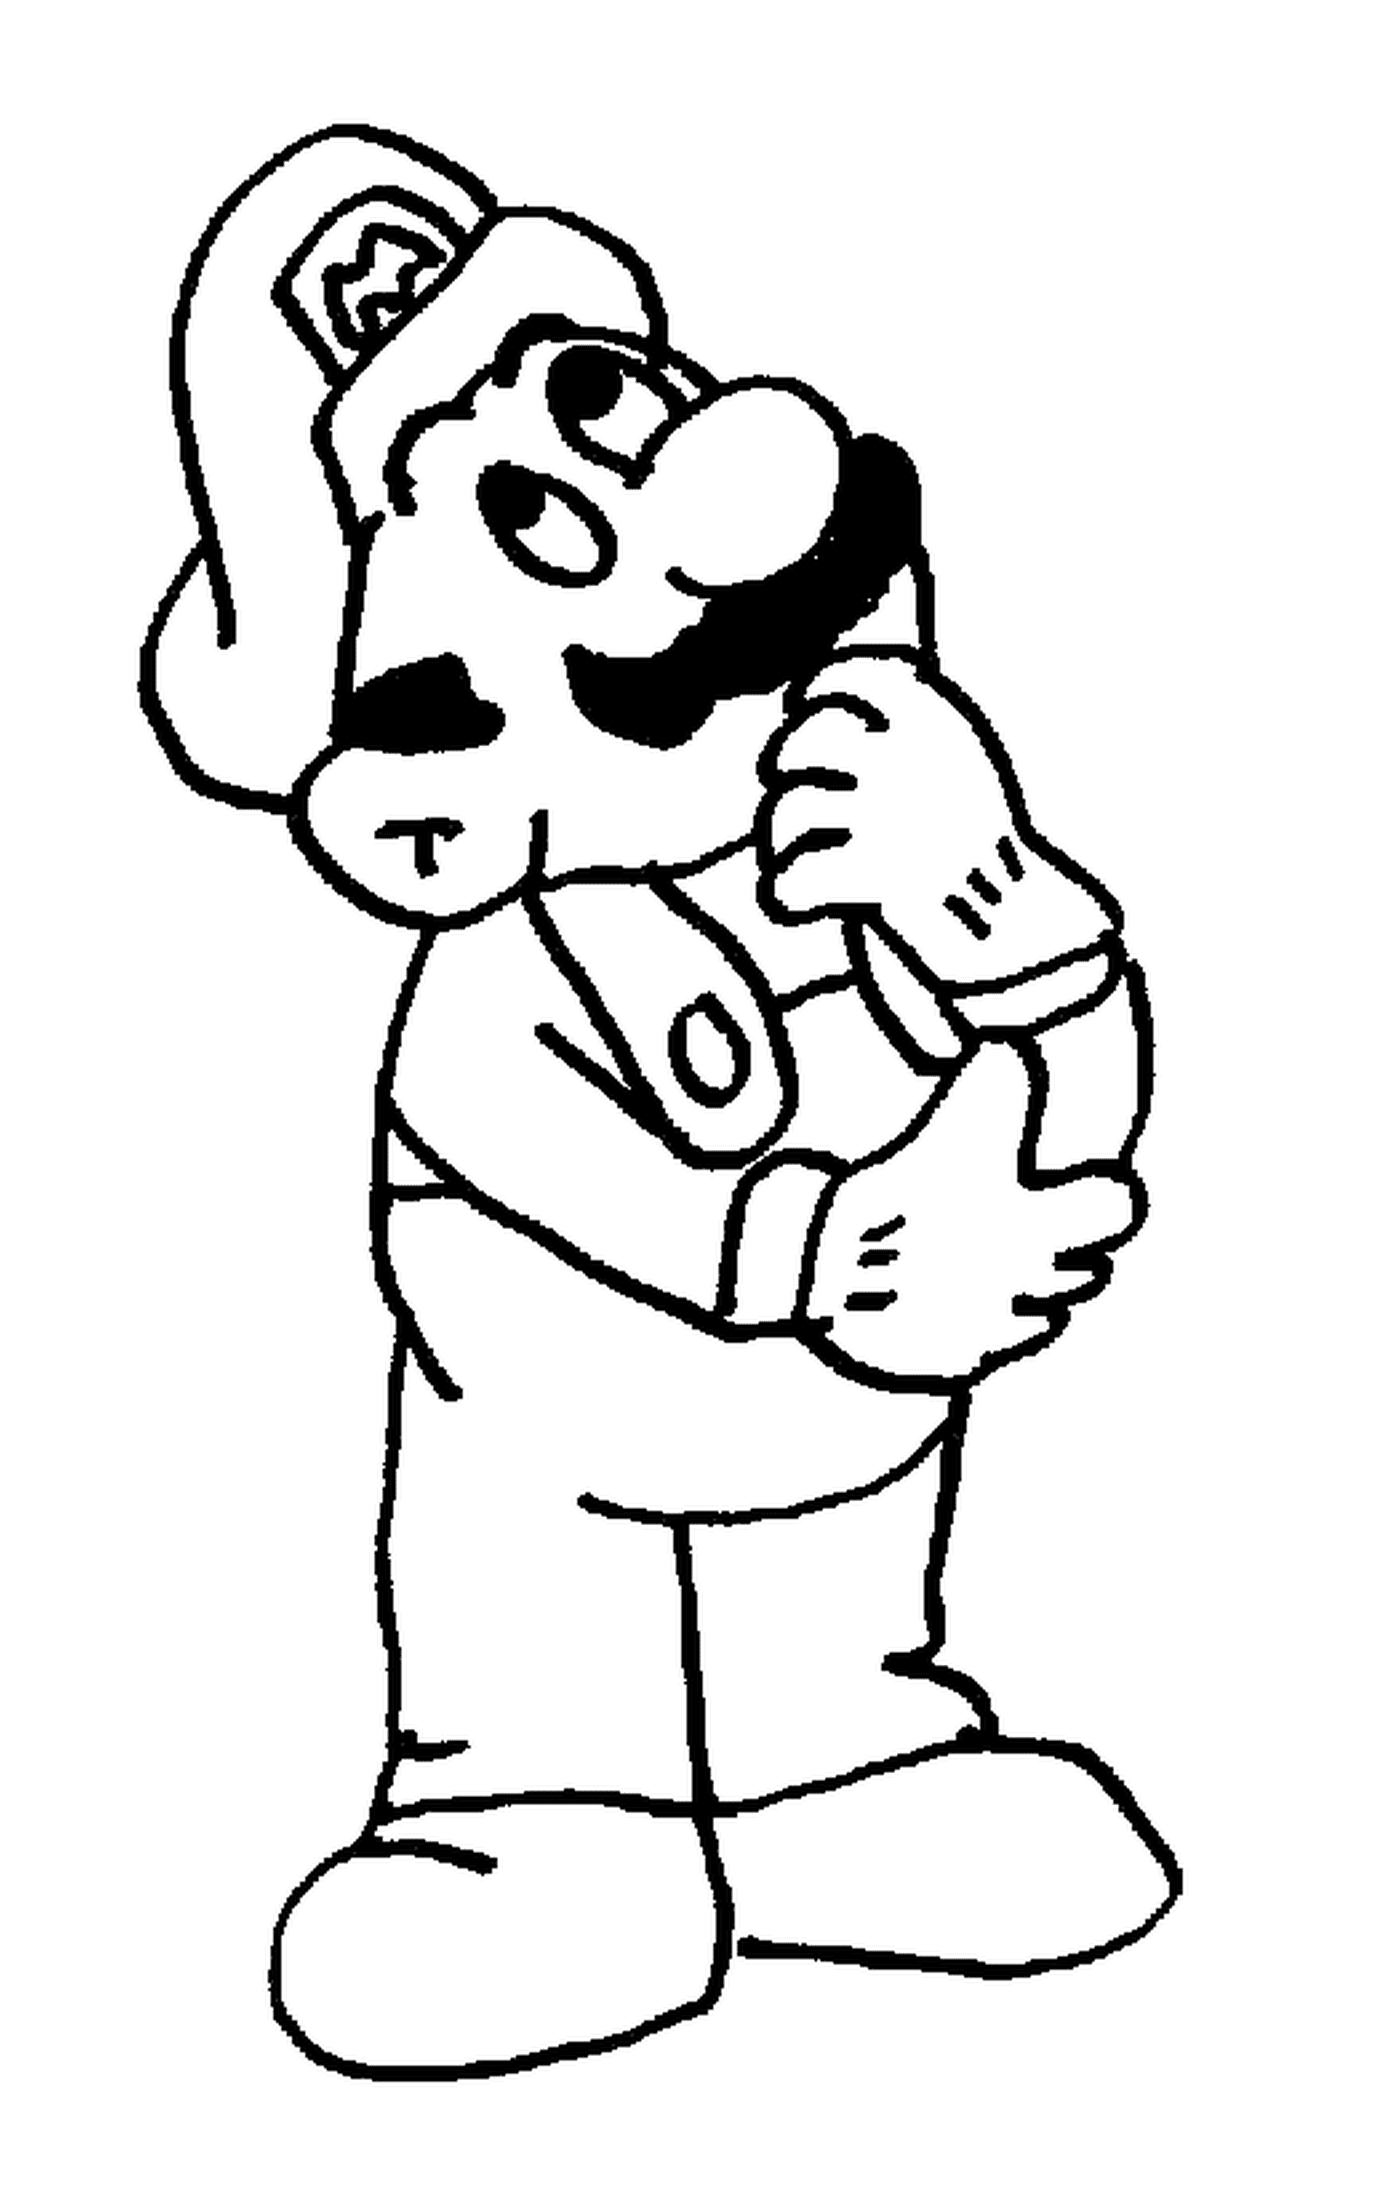  Mario, un hombre pensativo con bigote 